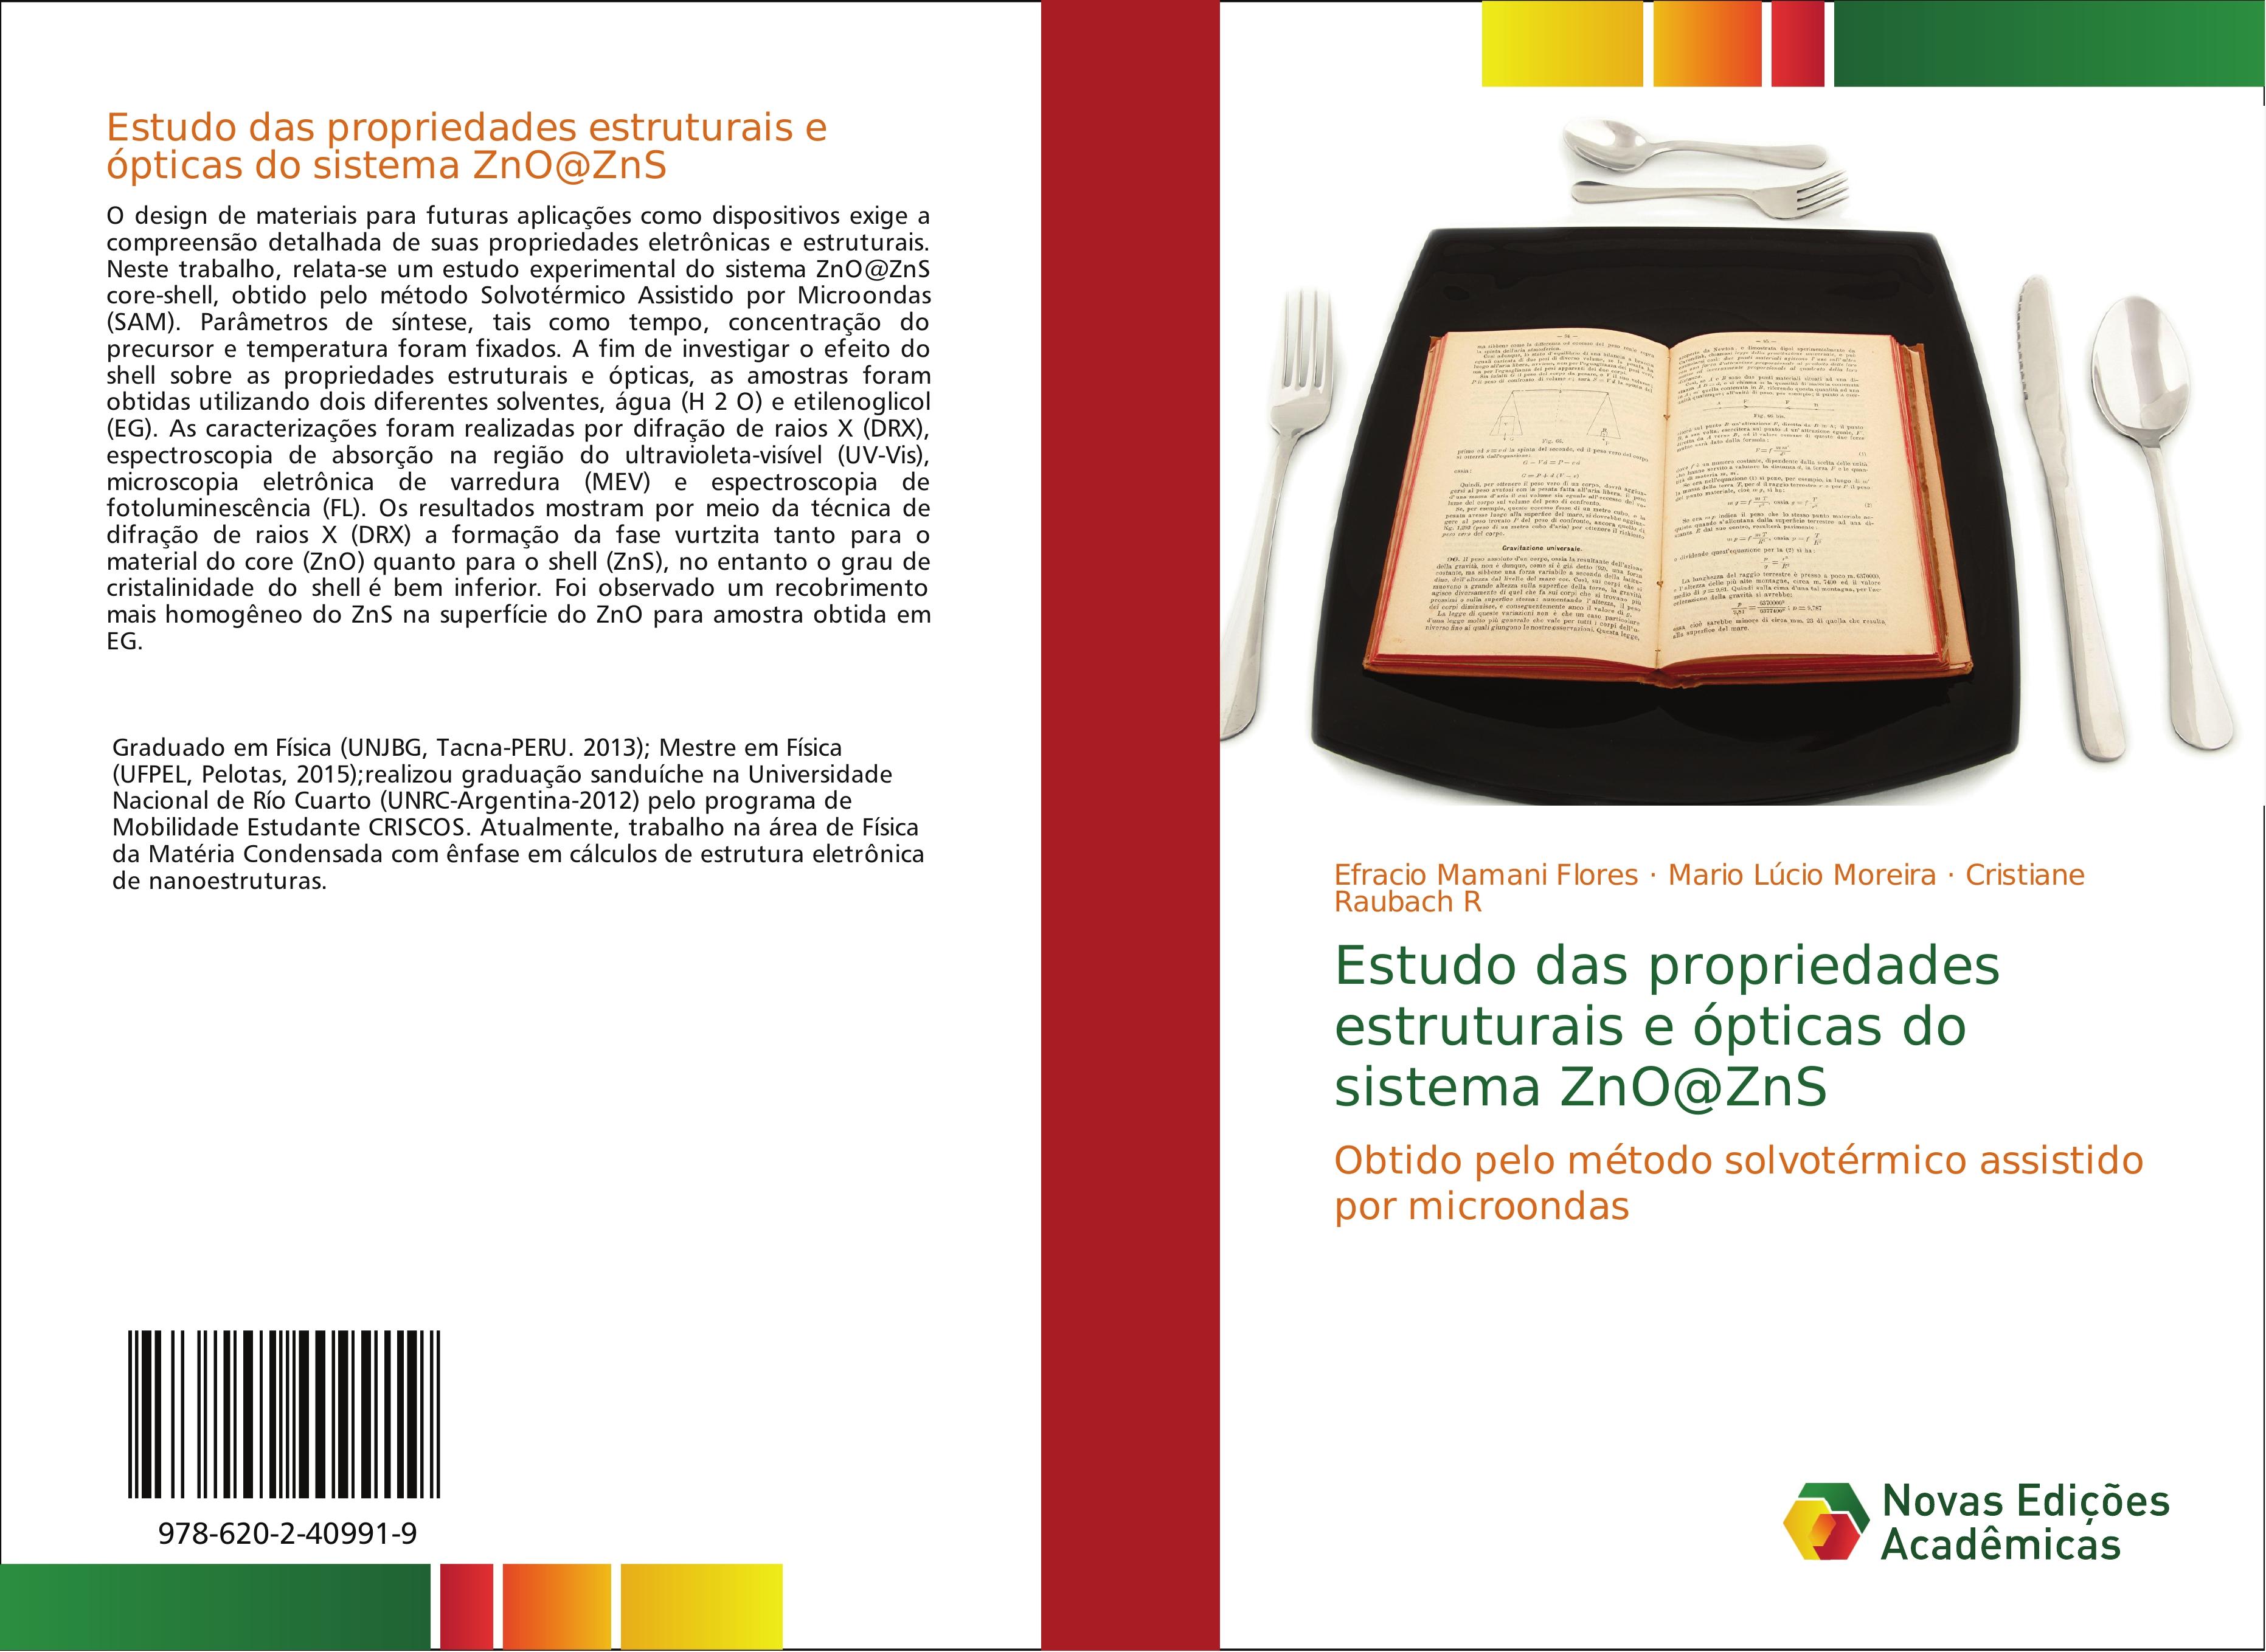 Estudo das propriedades estruturais e ópticas do sistema ZnO@ZnS - Efracio Mamani Flores Mario Lúcio Moreira Cristiane Raubach R